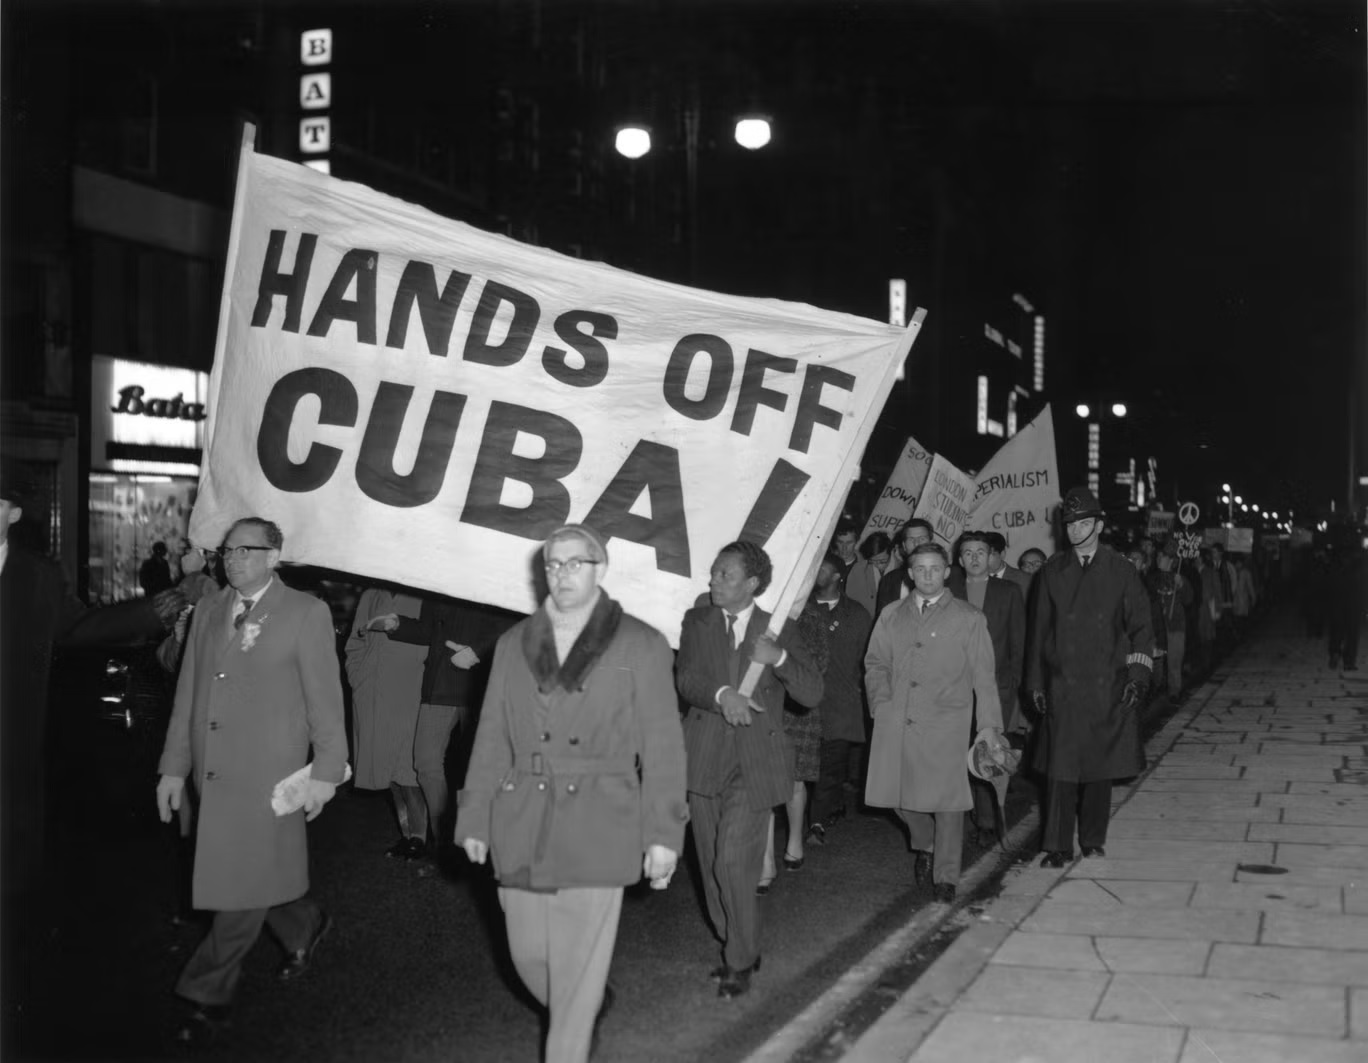 احتجاج لأعضاء حركة "نزع السلاح النووي" في شارع أكسفورد بلندن ضد القرارات الأميركية خلال أزمة الصواريخ الكوبية (غيتي)